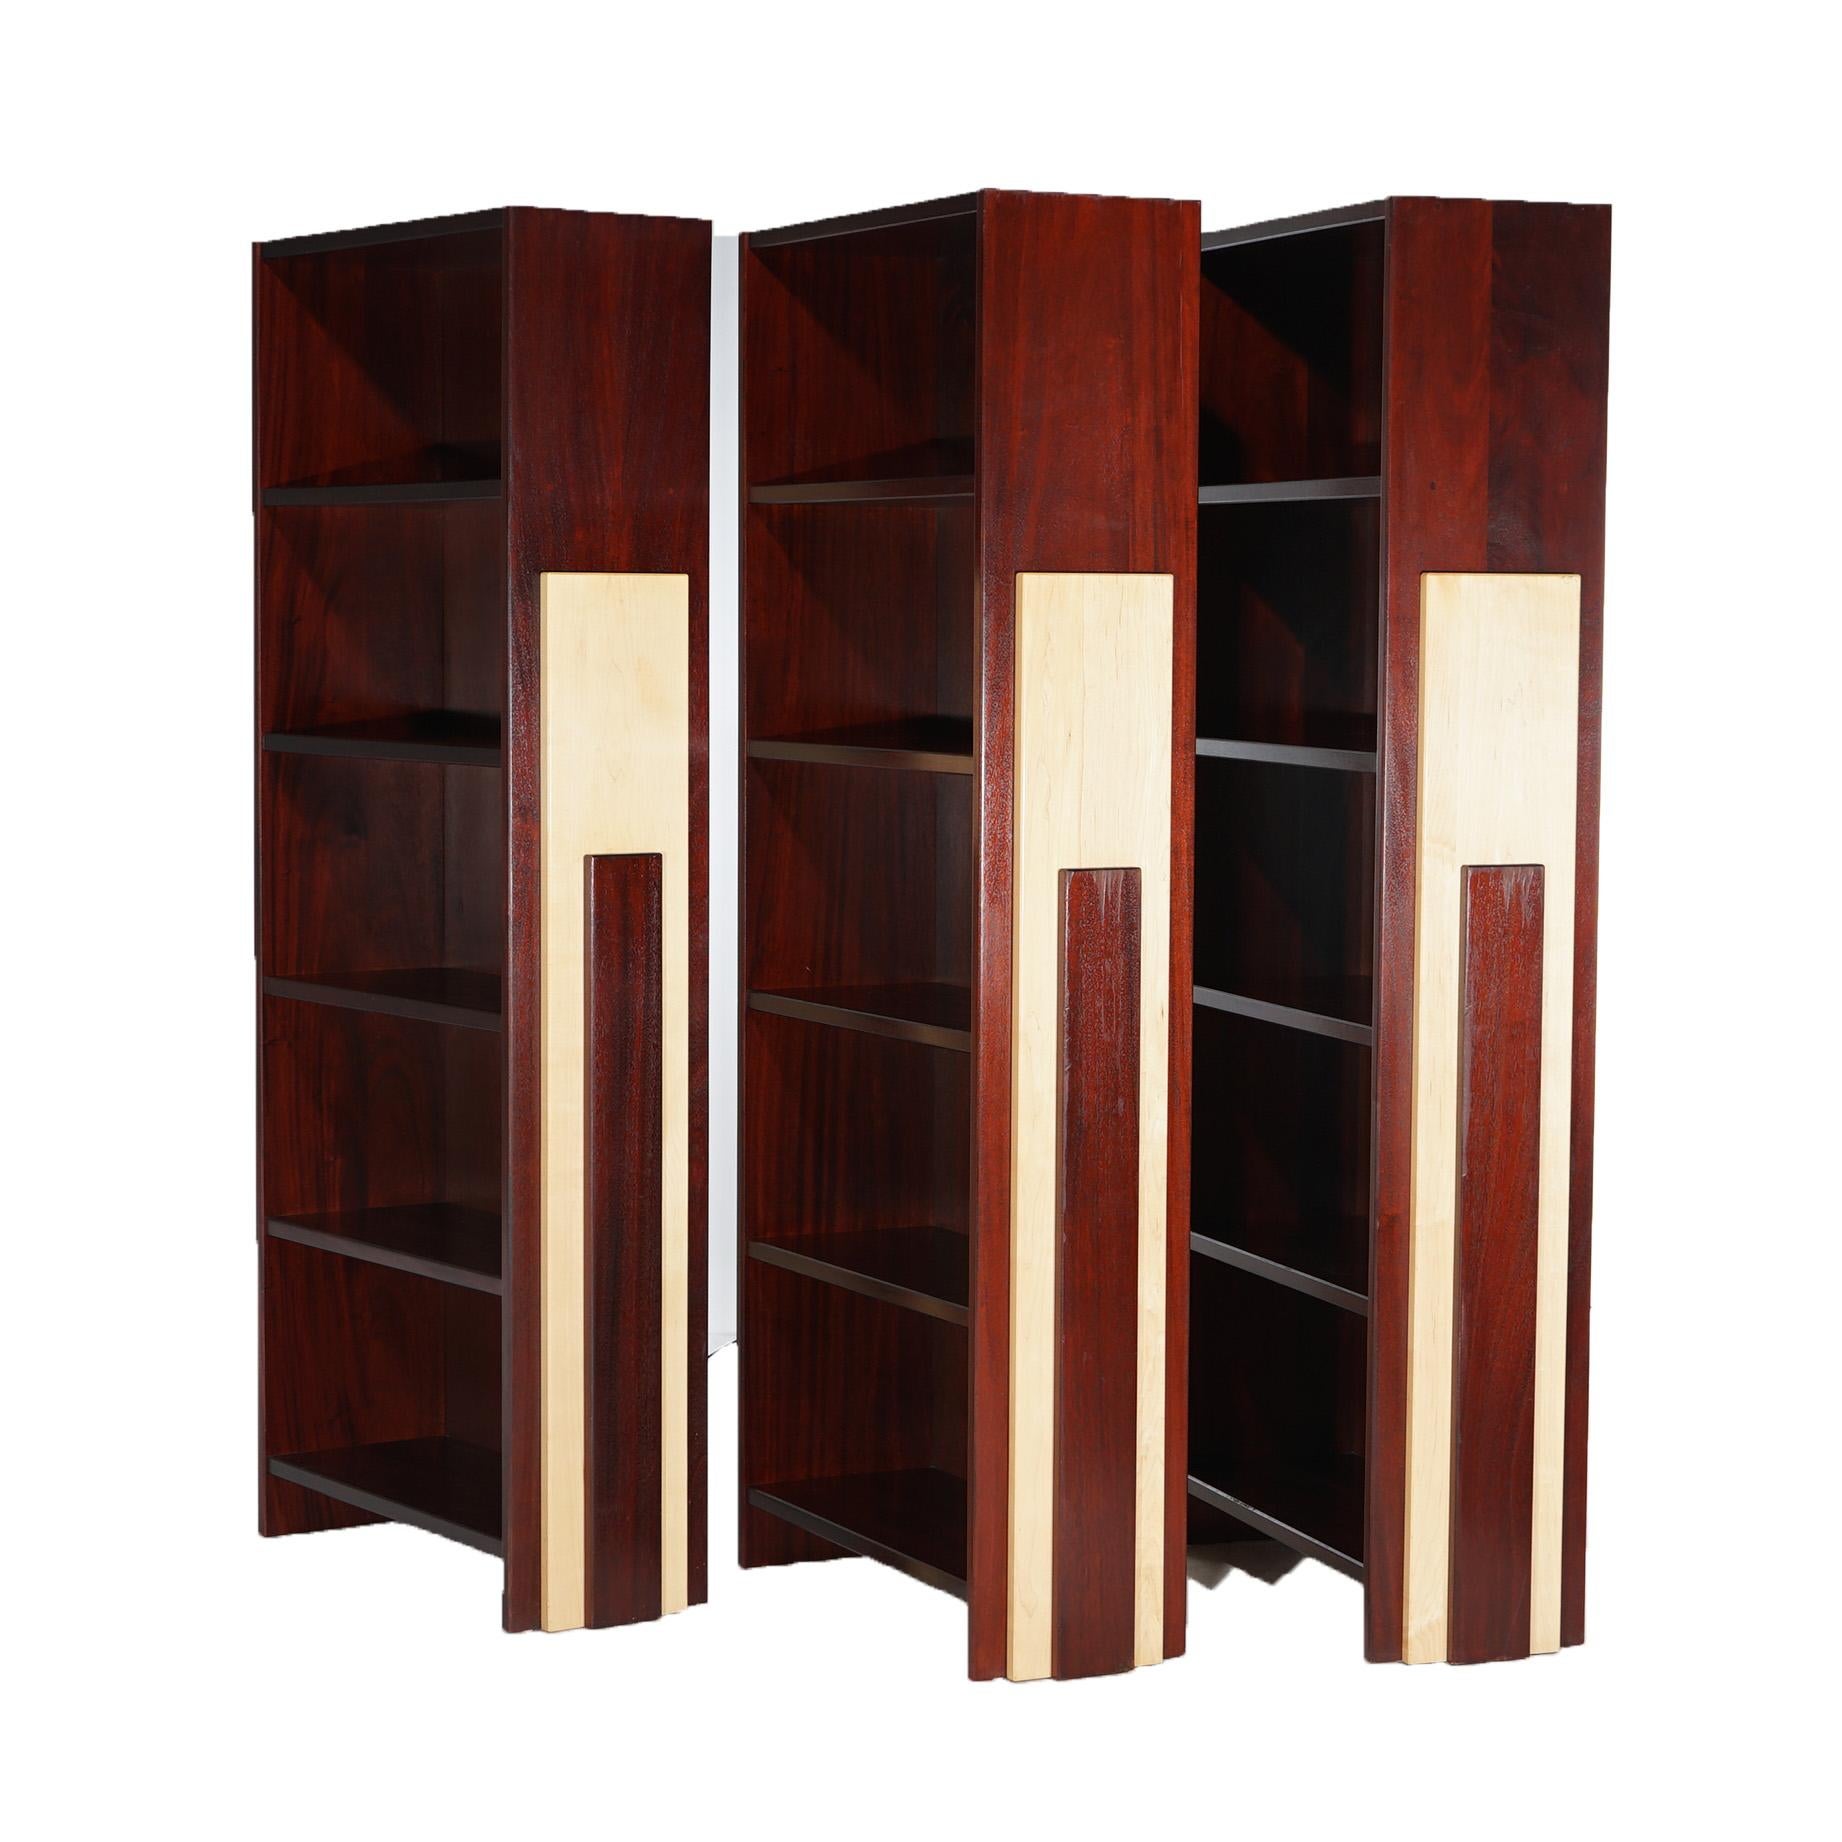 Ein Satz von drei Mid Century Modern Bücherregale bieten Mahagoni-Konstruktion mit offenen Regalen und Cut-out Ahorn Verkleidung an den Seiten, 20thC


Maße: 81,75''H x 35,5''B x 13,5''D